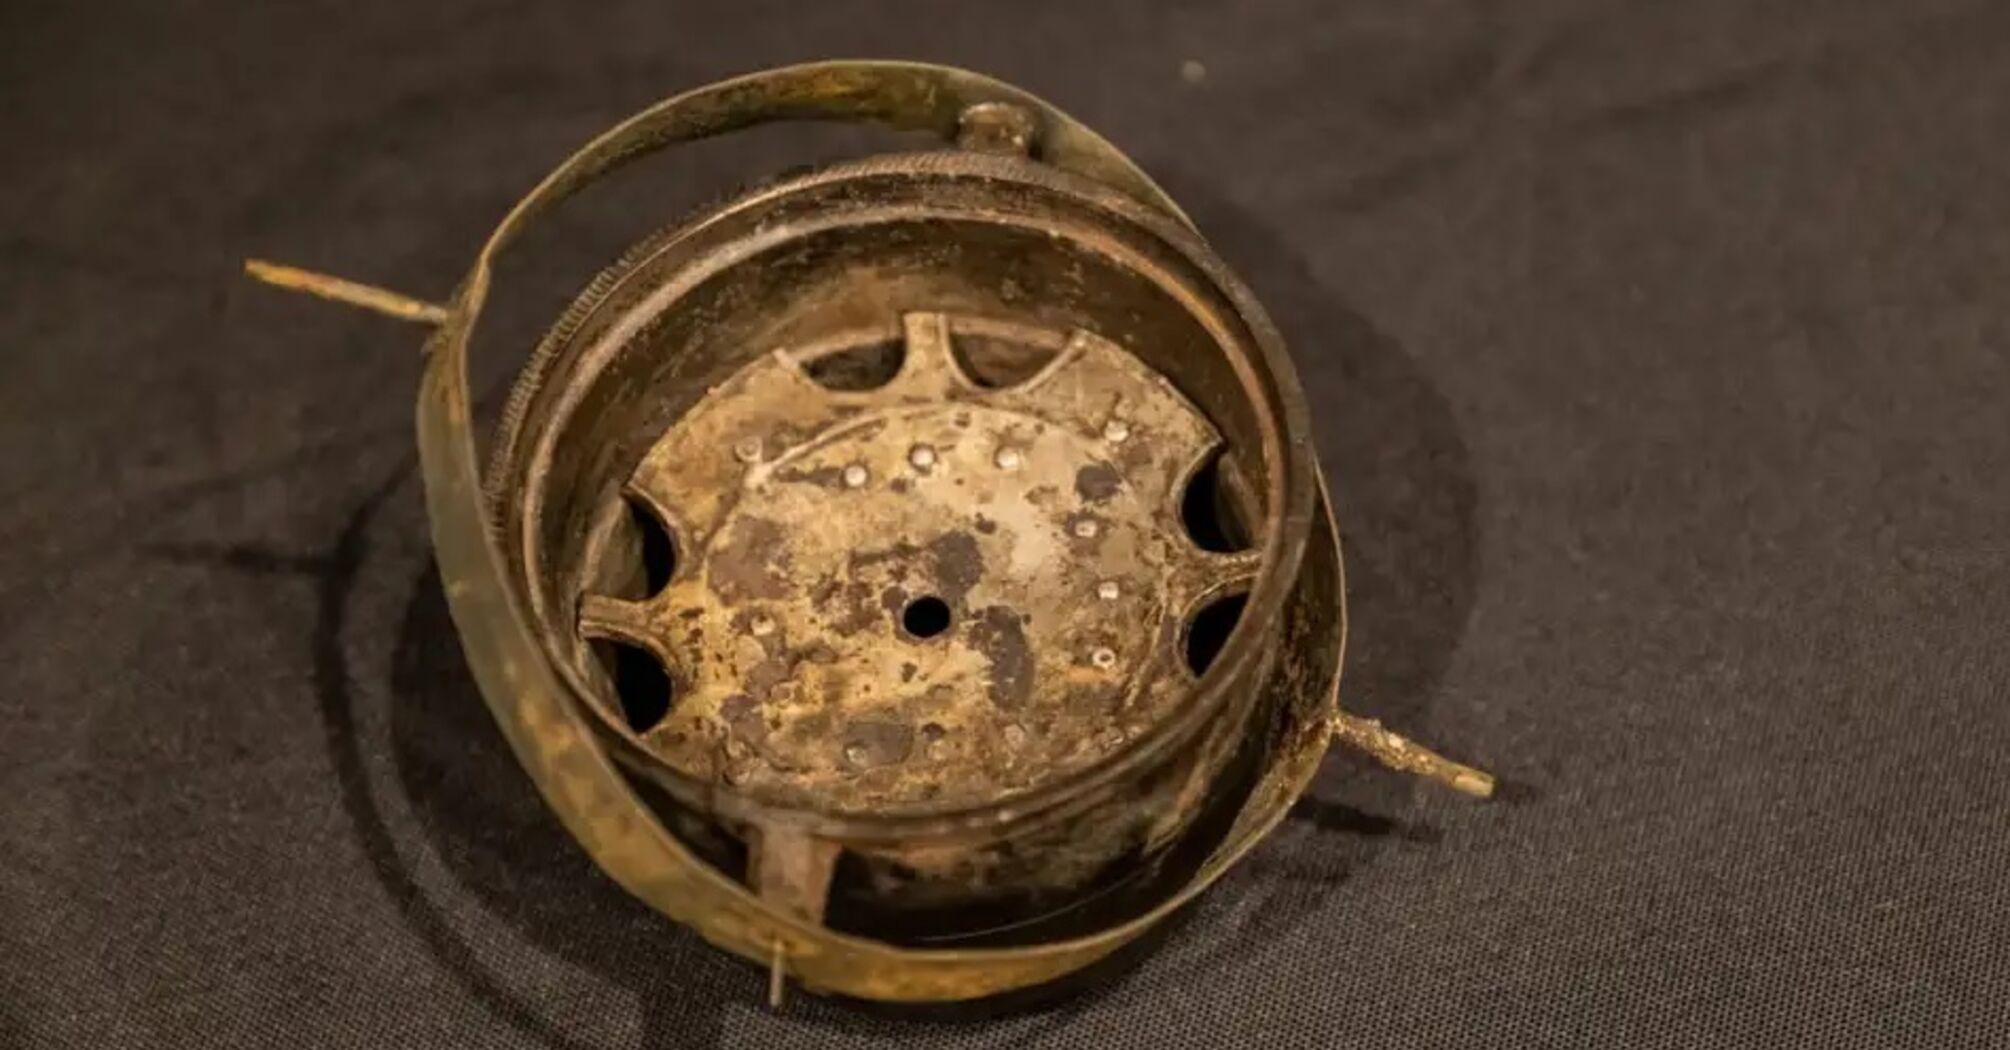 Археологи обнаружили на обломках корабля в Эстонии старейший сухой компас Европы (фото)